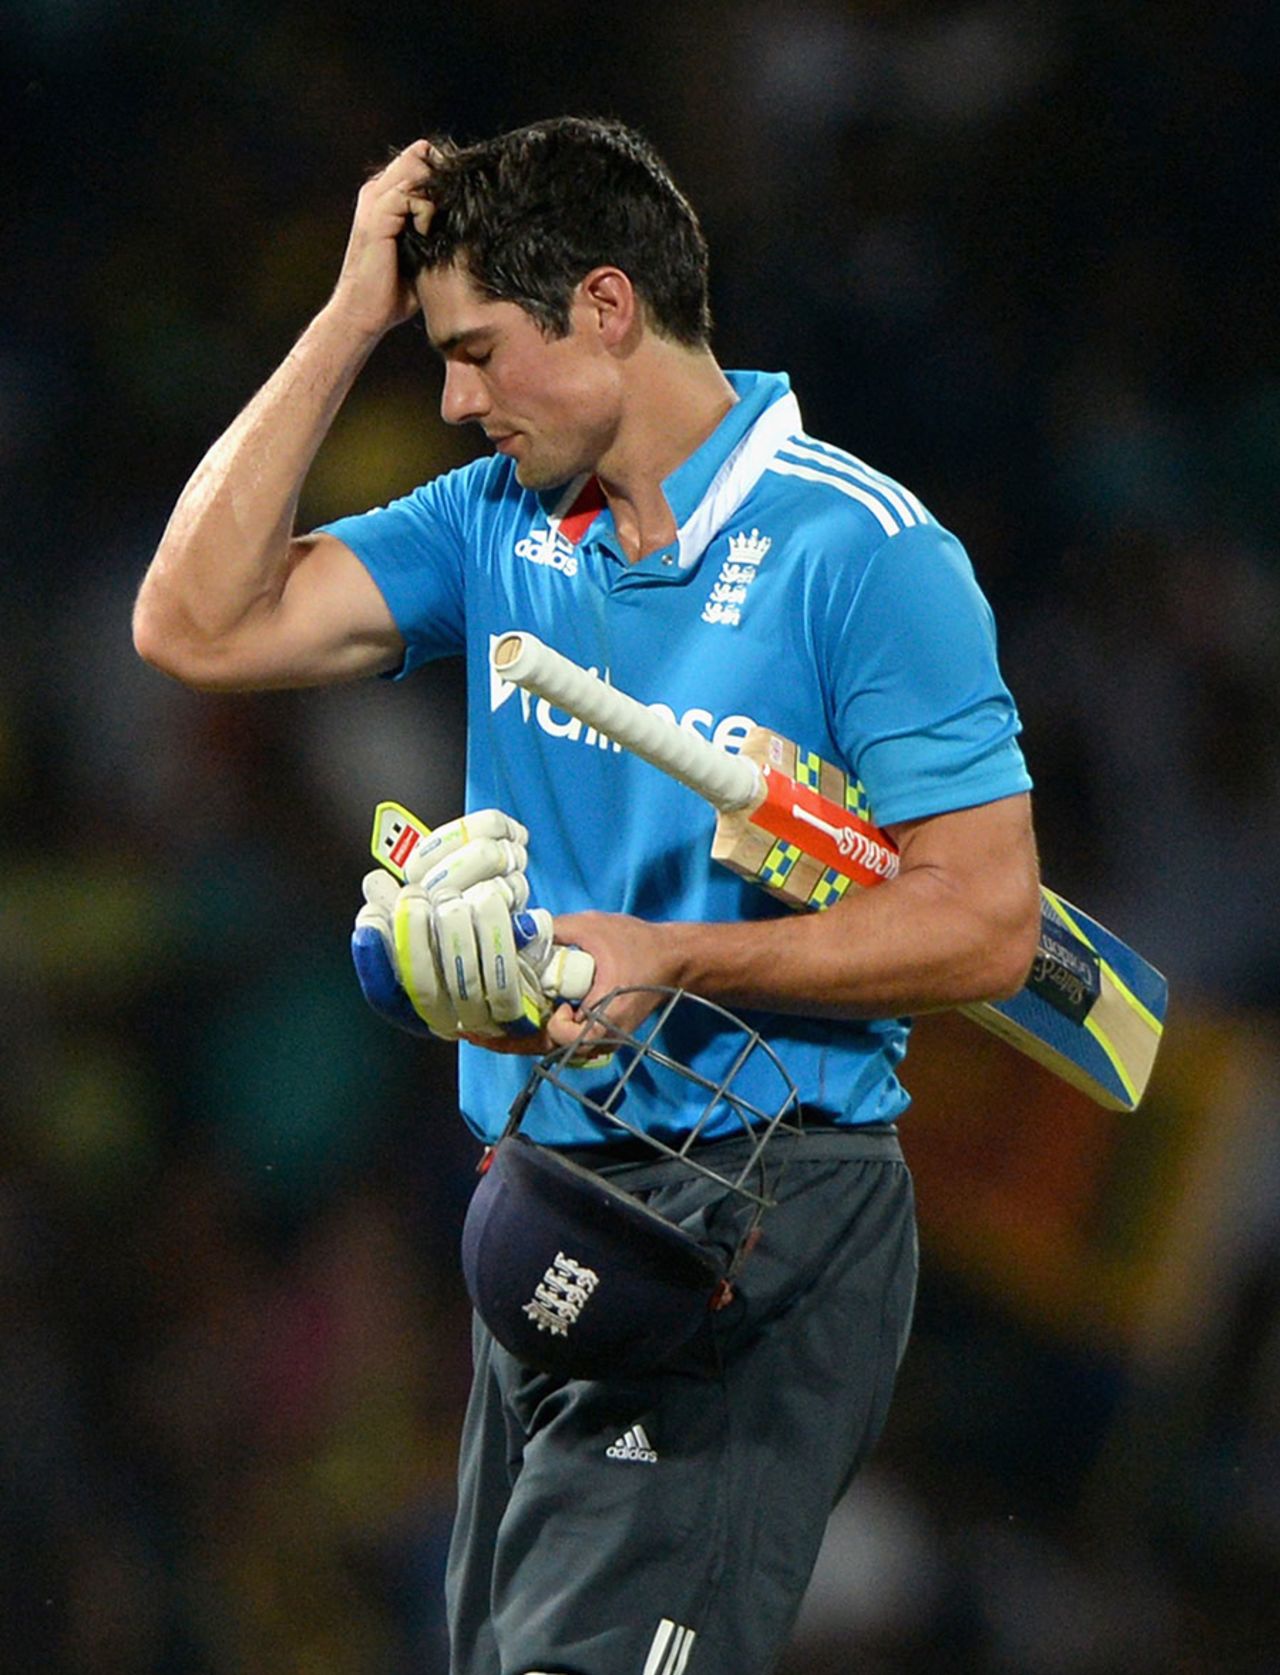 After several near-misses Alastair Cook fell for 32, Sri Lanka v England, 7th ODI, Colombo, December 16, 2014